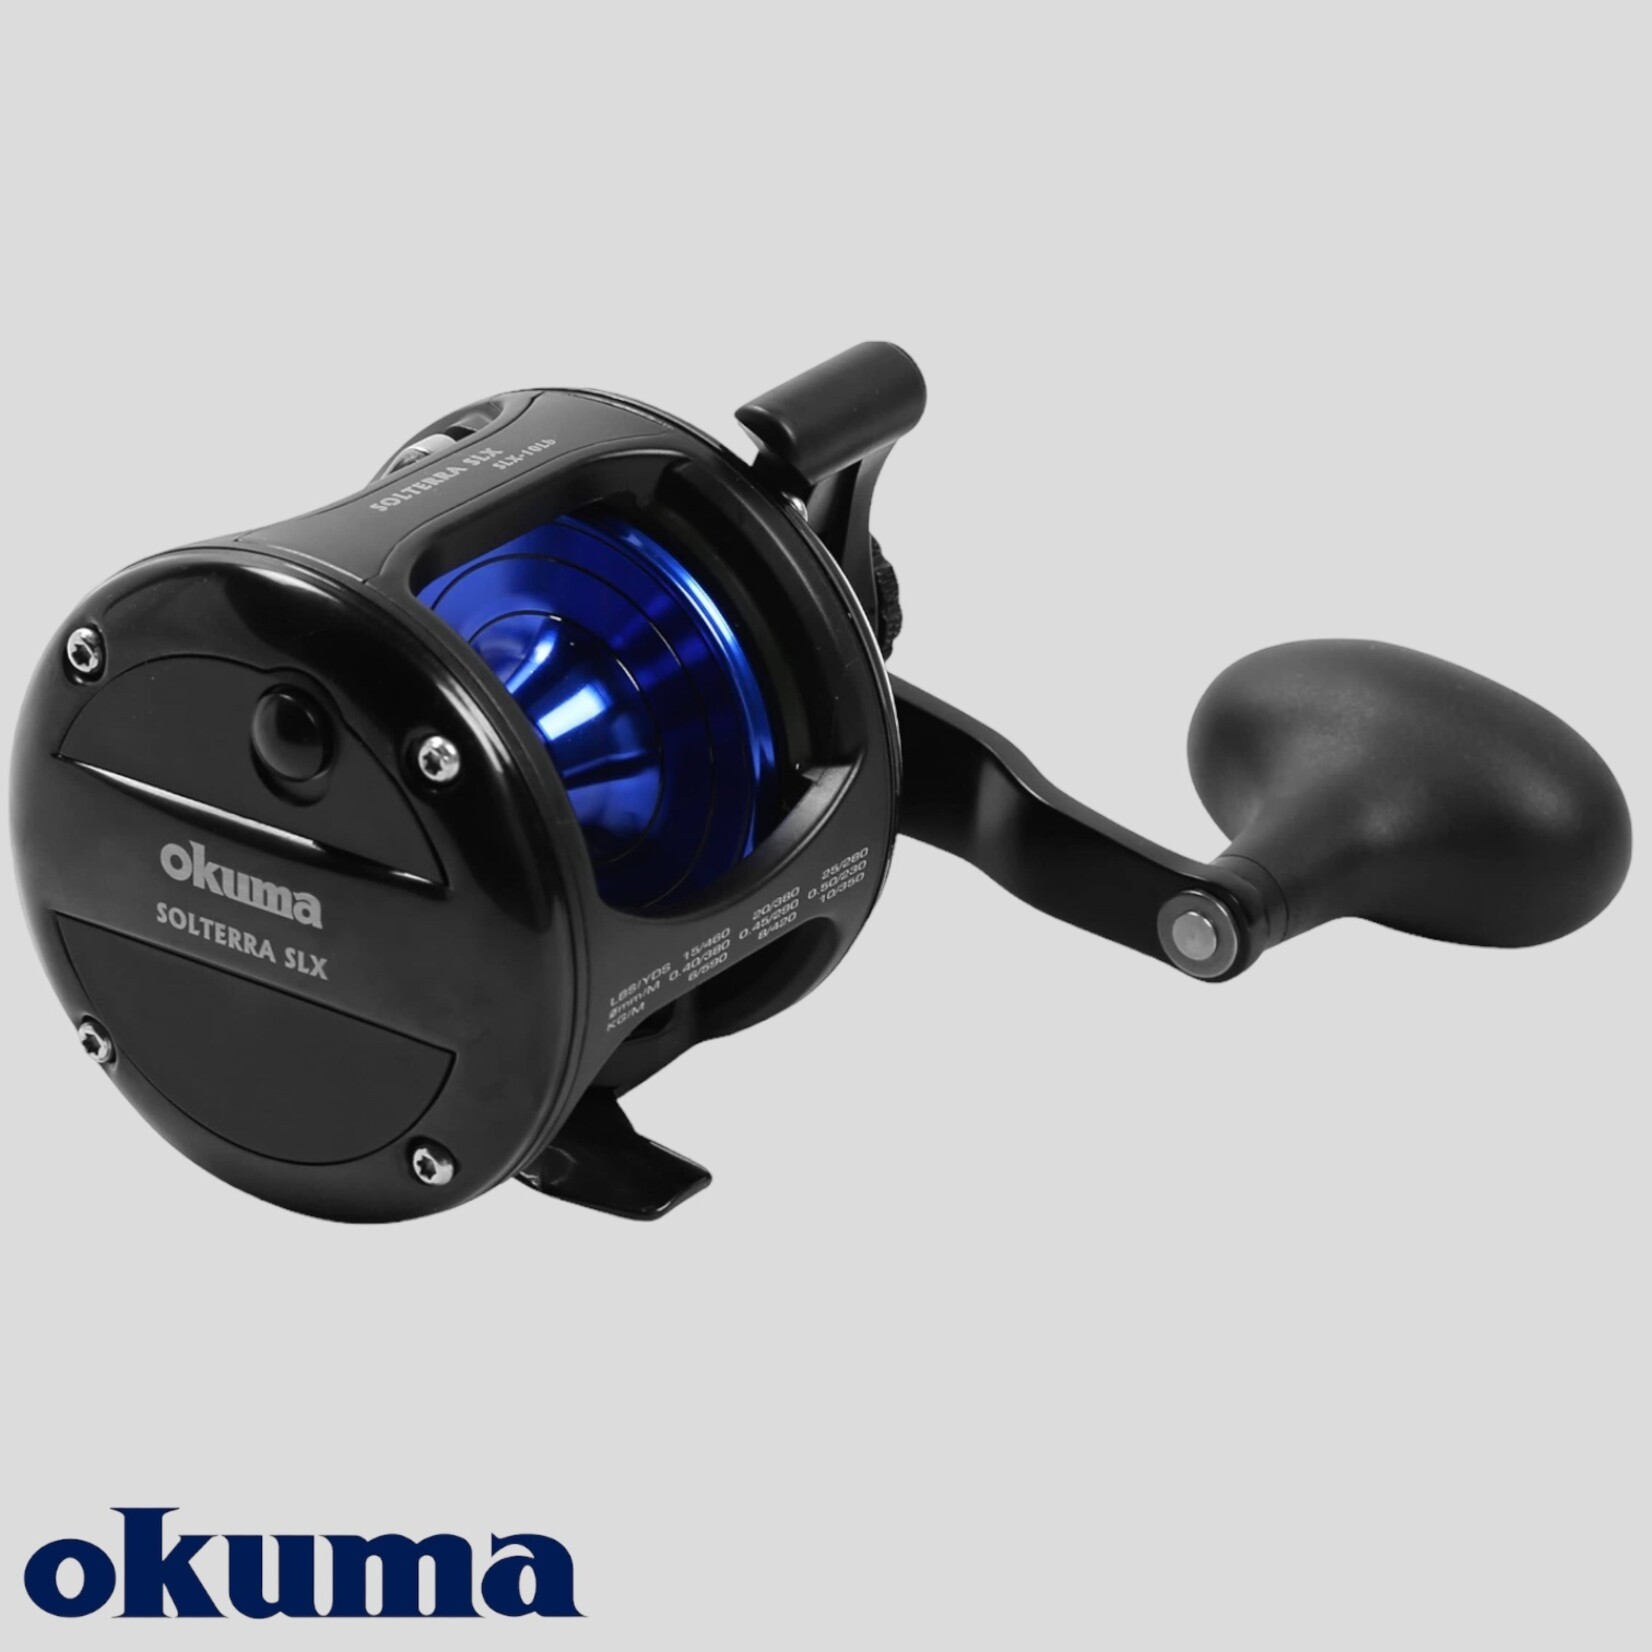 Okuma Solterra SLX -B Reel - Tyalure Tackle